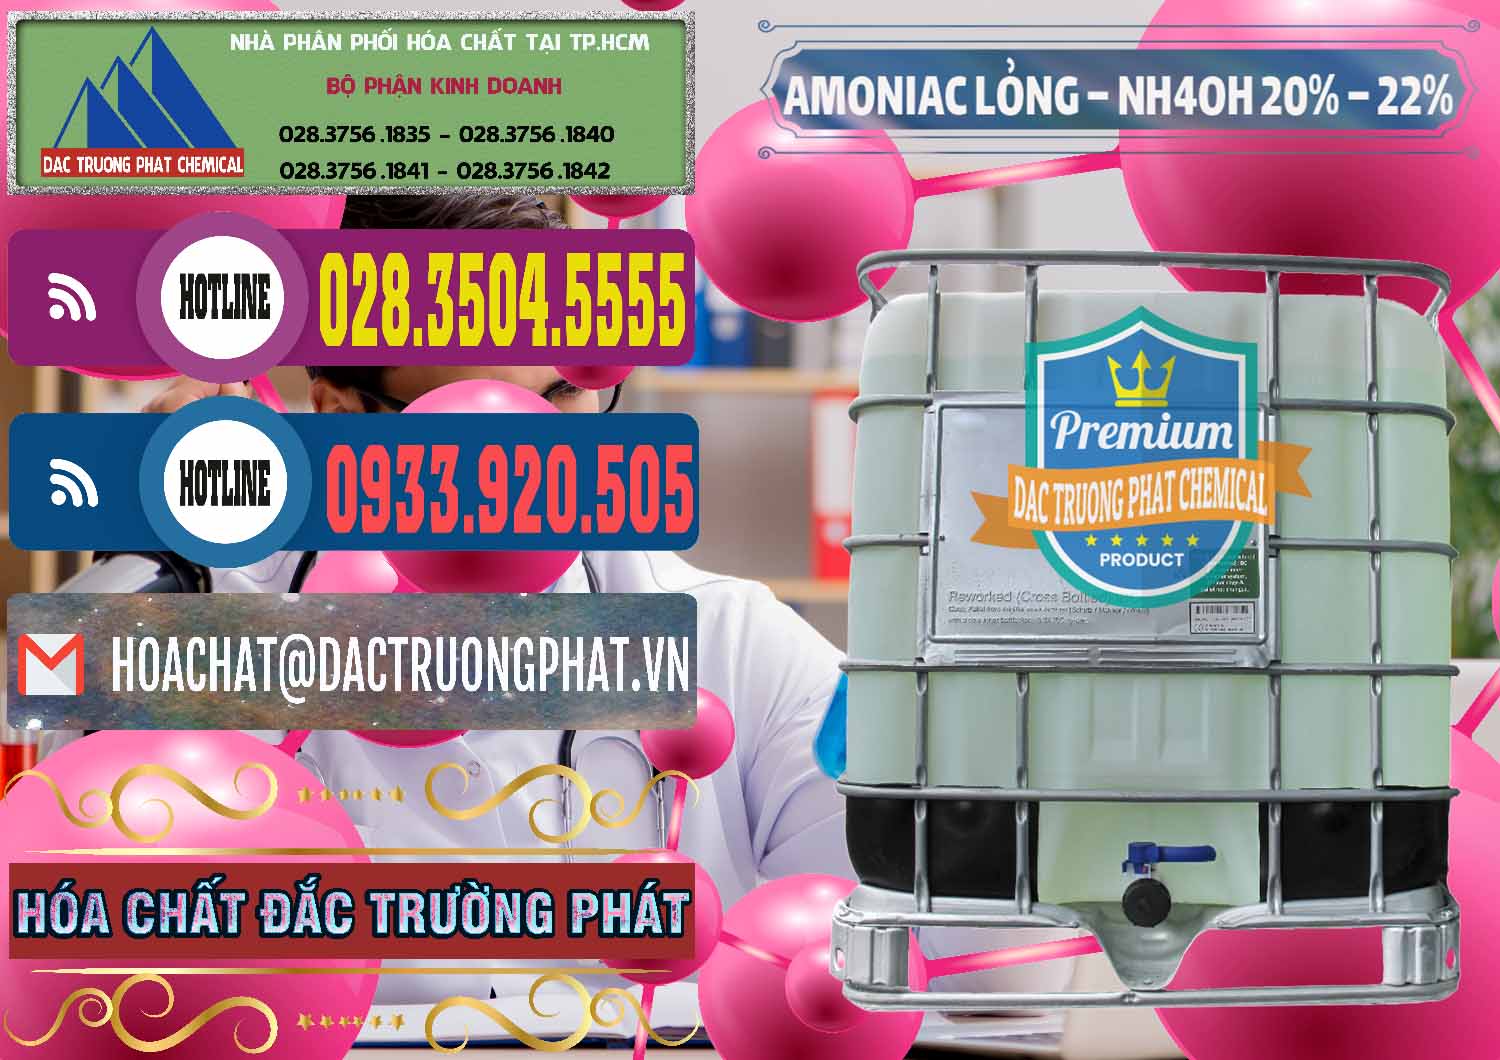 Cty cung cấp ( phân phối ) Amoniac Lỏng – NH4OH 20% – 22% Việt Nam - 0185 - Cty cung cấp _ kinh doanh hóa chất tại TP.HCM - muabanhoachat.com.vn